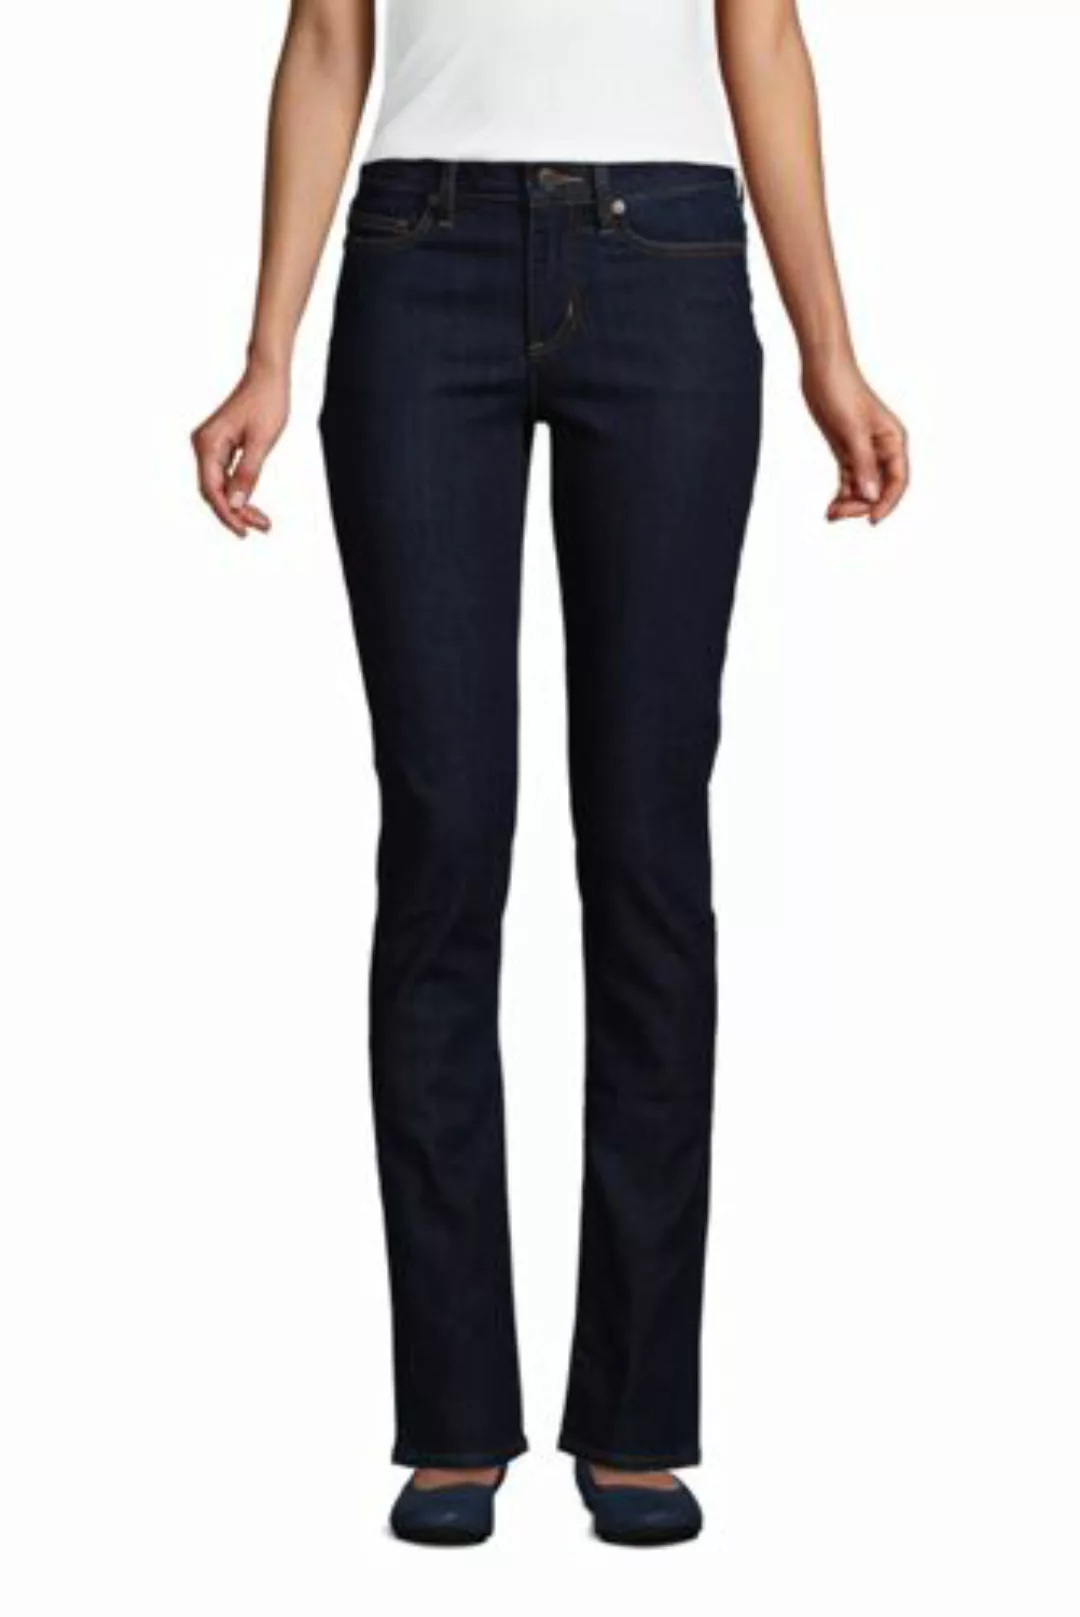 Straight Fit Öko Jeans Mid Waist, Damen, Größe: 34 30 Normal, Blau, Baumwol günstig online kaufen